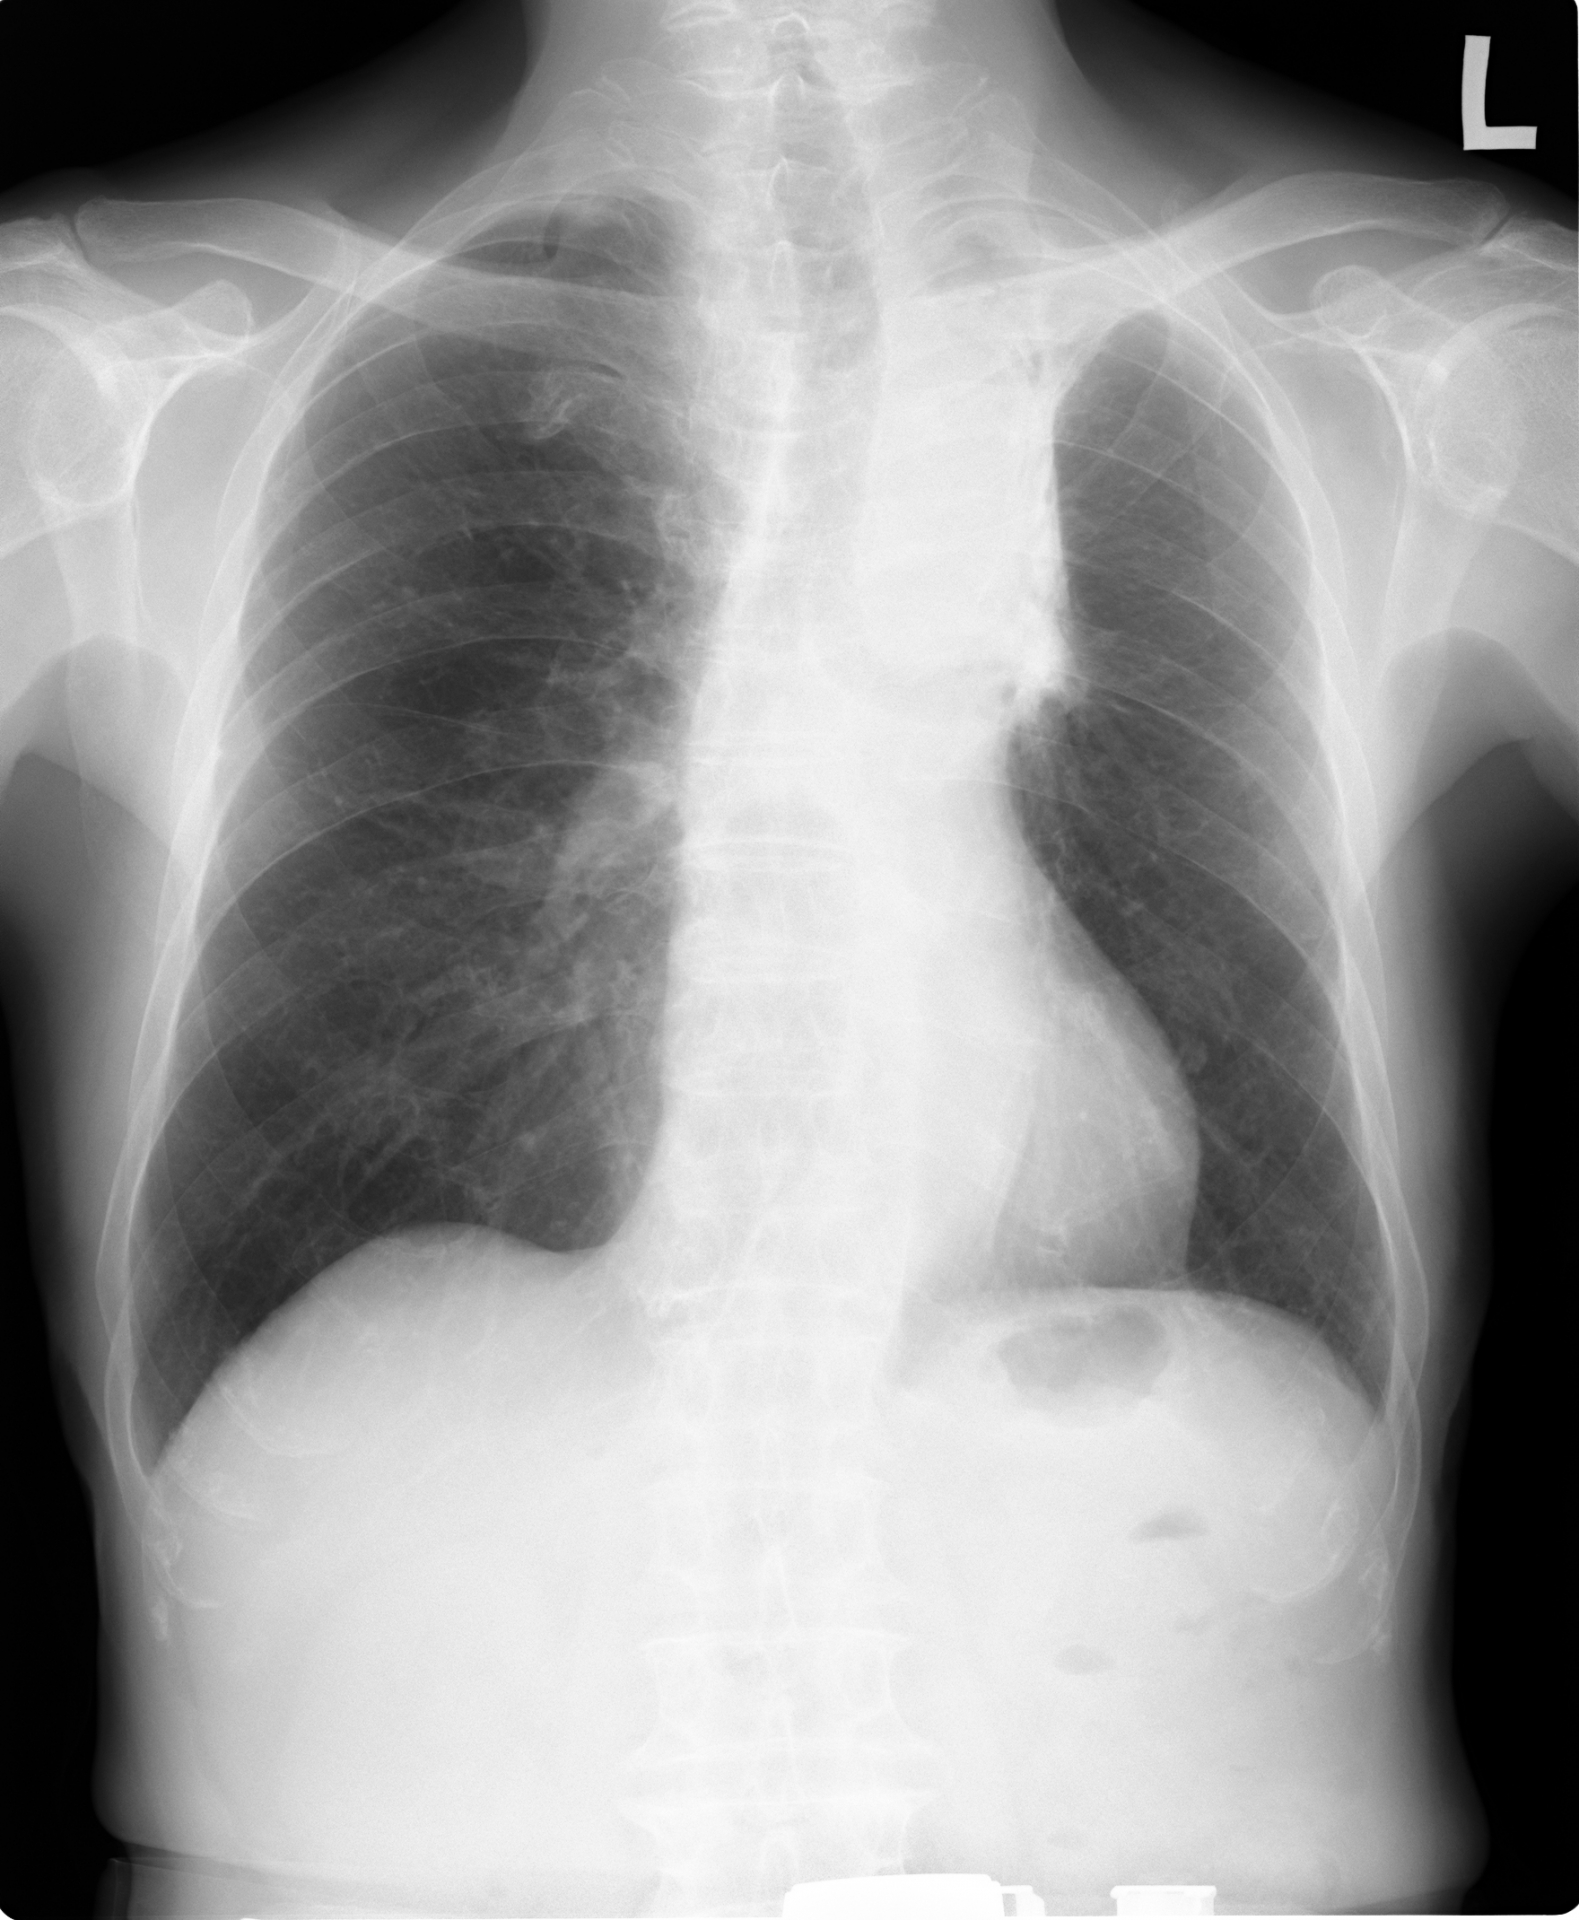 産業医のためのじん肺エックス線写真図譜